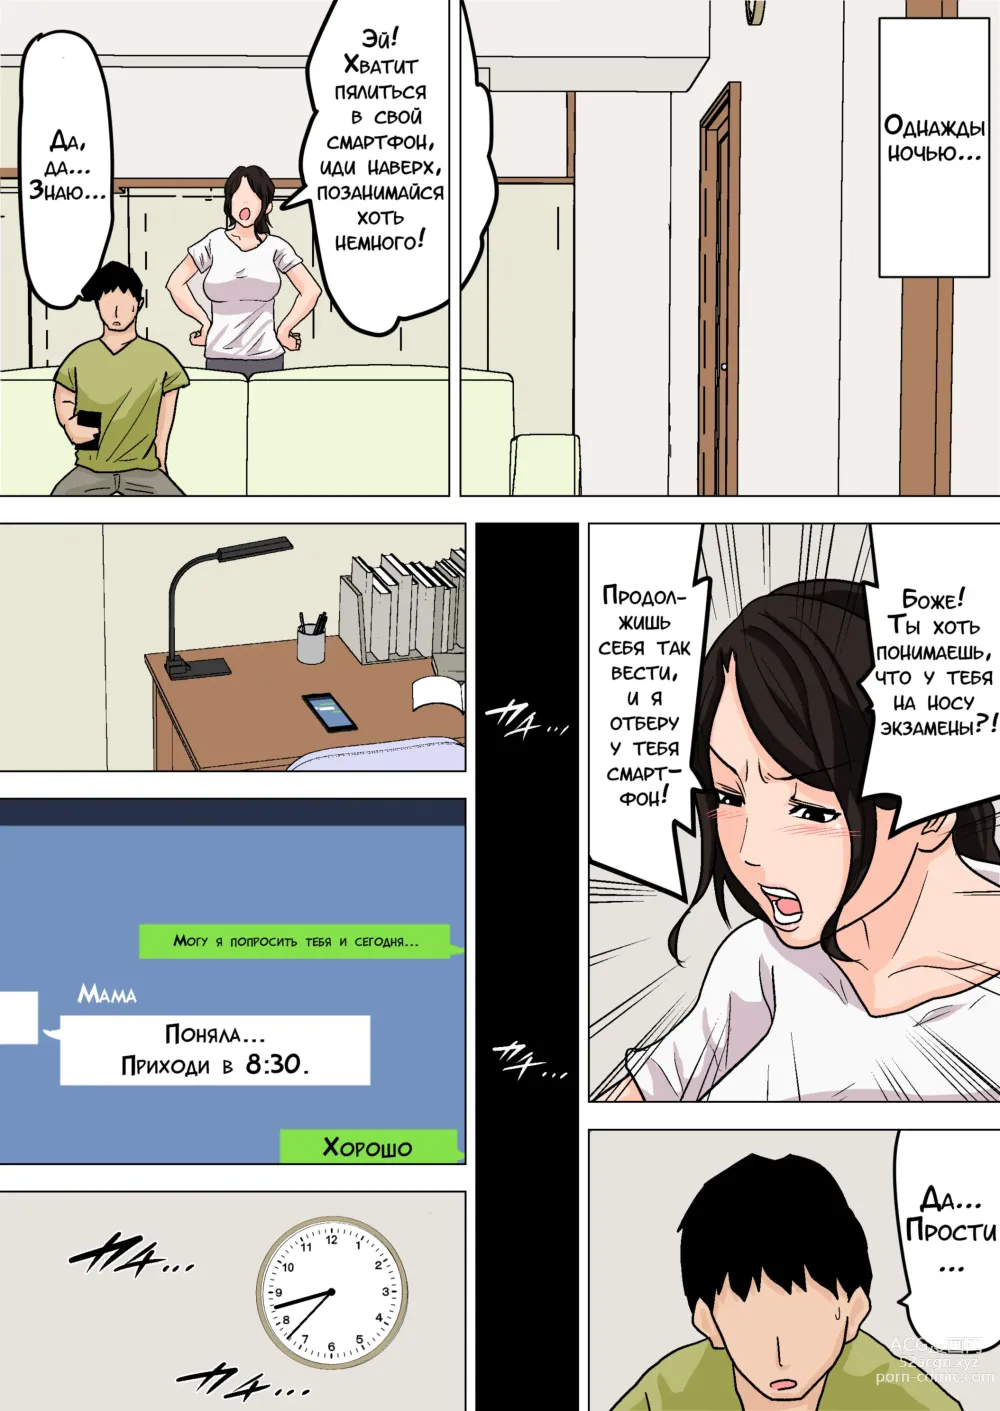 Page 19 of doujinshi Ежедневное снятие сексуального напряжения вместе с мамой!